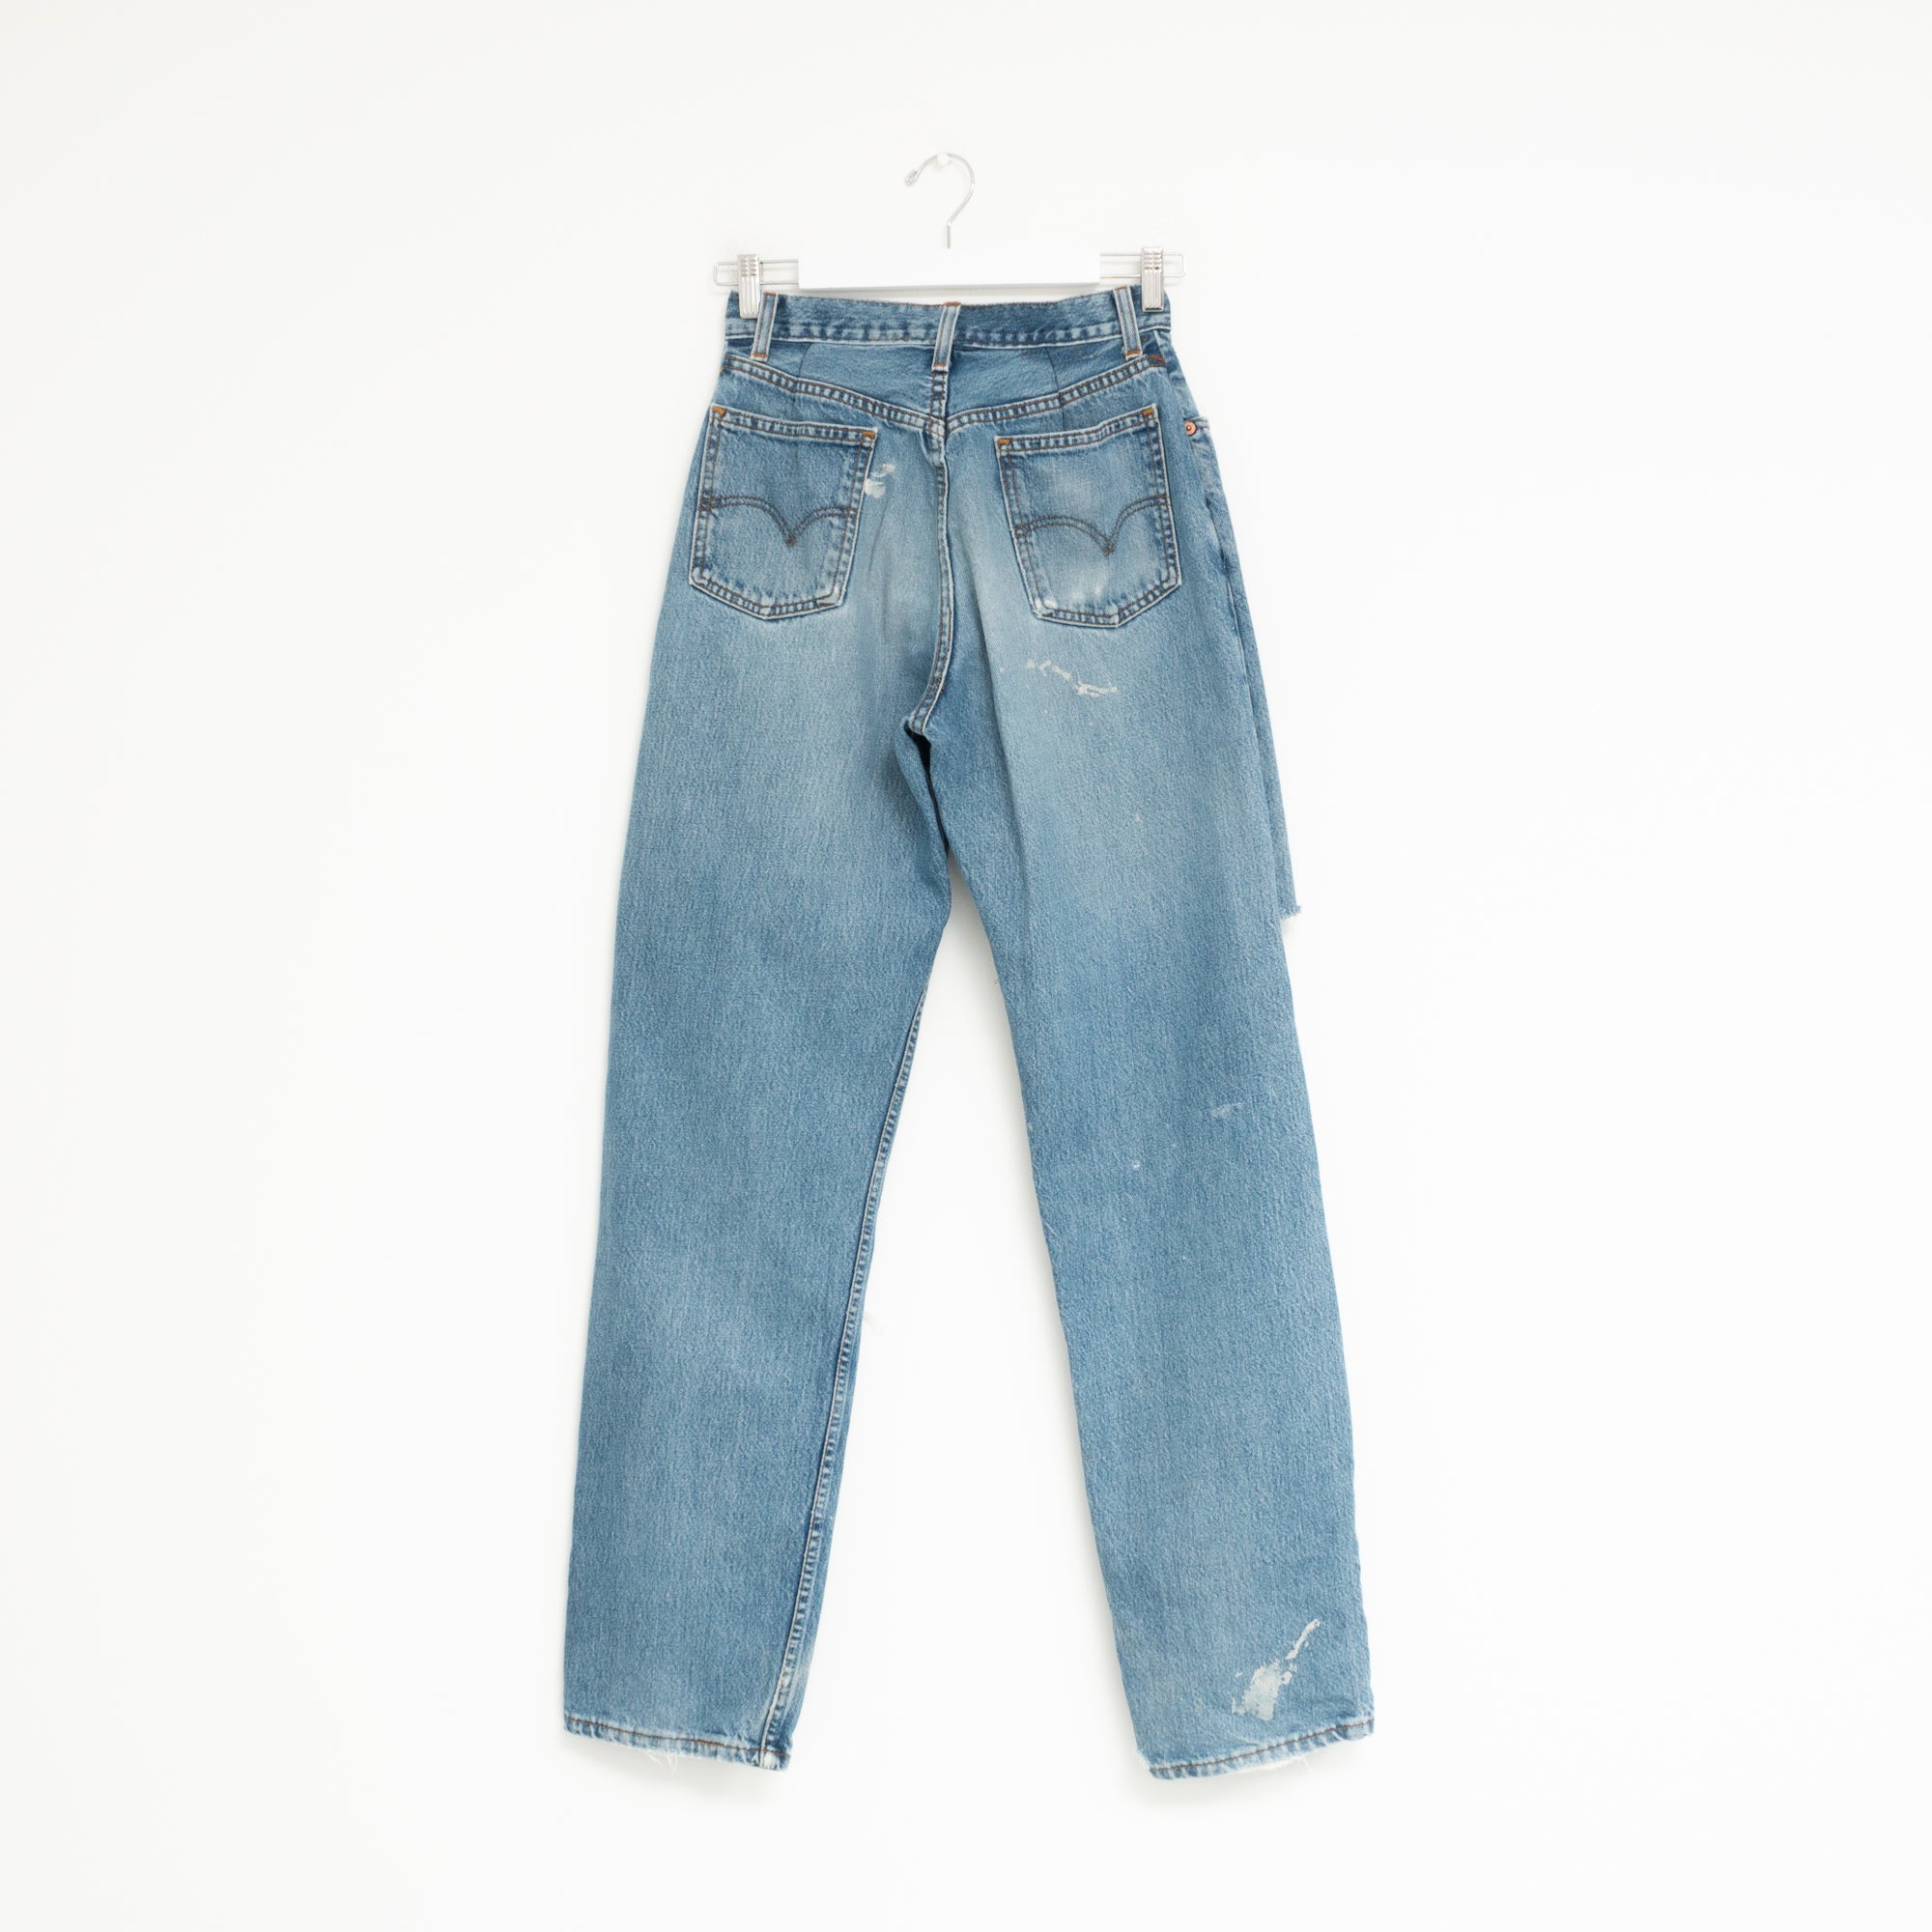 "DISTRESSED" Jeans W26 L35